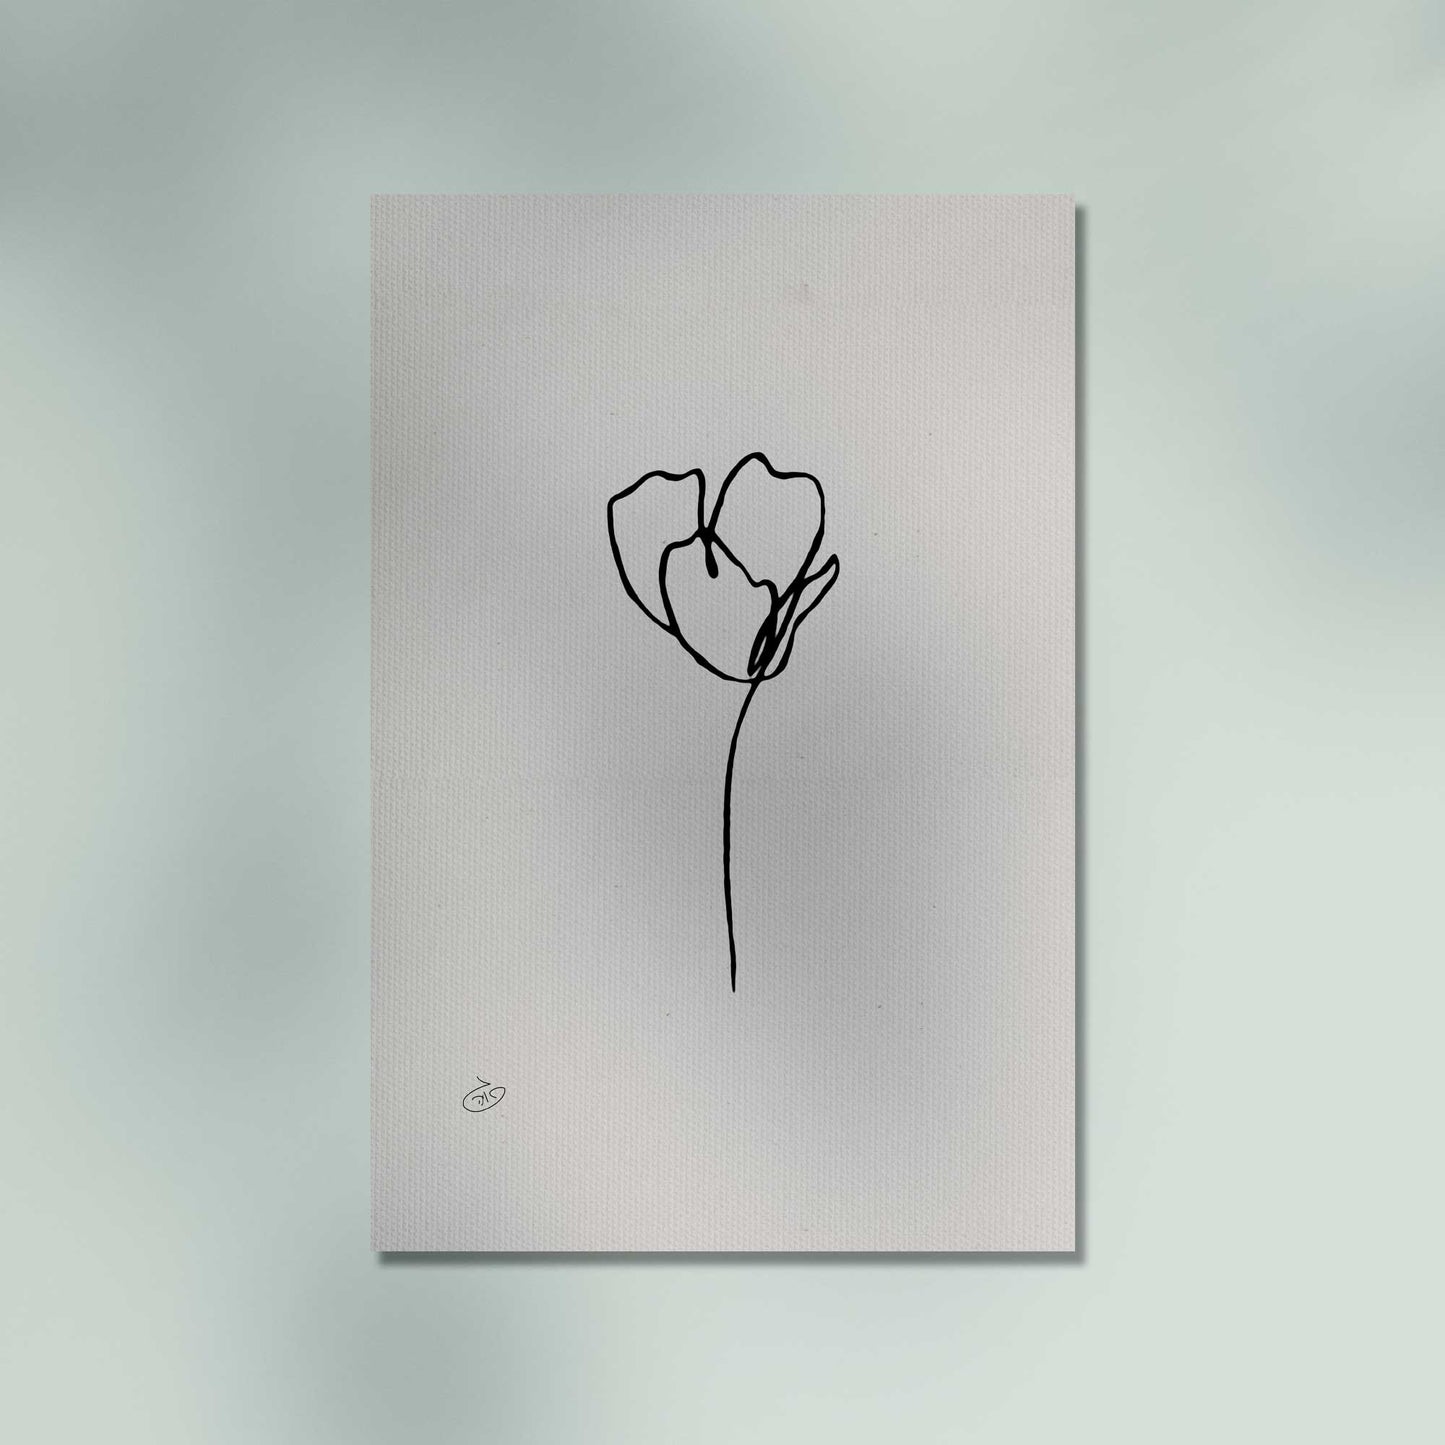 פוסטר One Line Flower - Camila Poster ציור מקורי של גאיה המקדם את המודעות לאלימות בין בני זוג בכלל וכלפי נשים בפרט